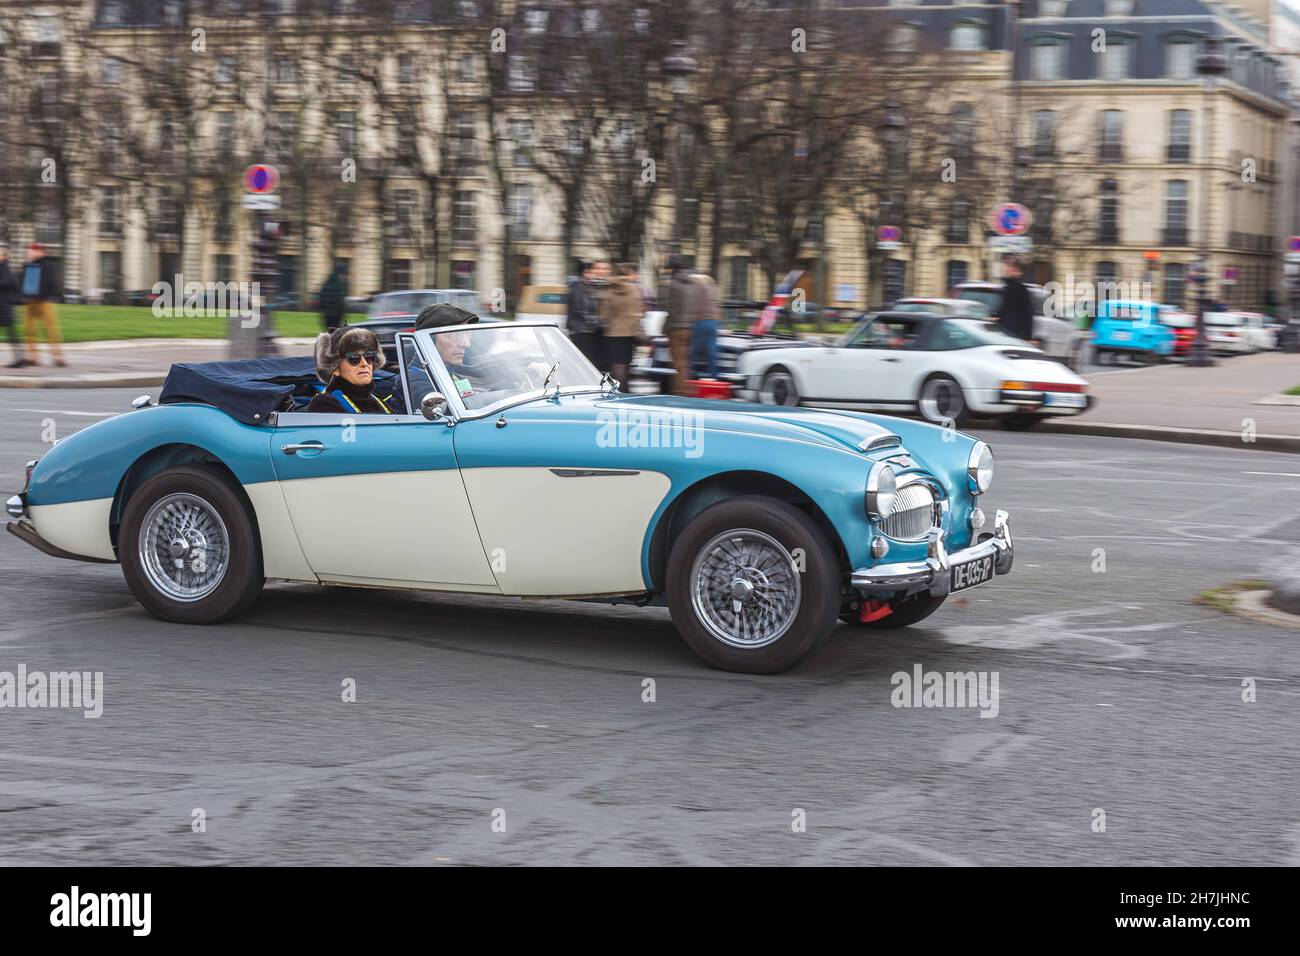 PARIGI, FRANCIA - 25 ottobre 2021: Una vecchia auto classica blu e bianca lungo la strada Foto Stock